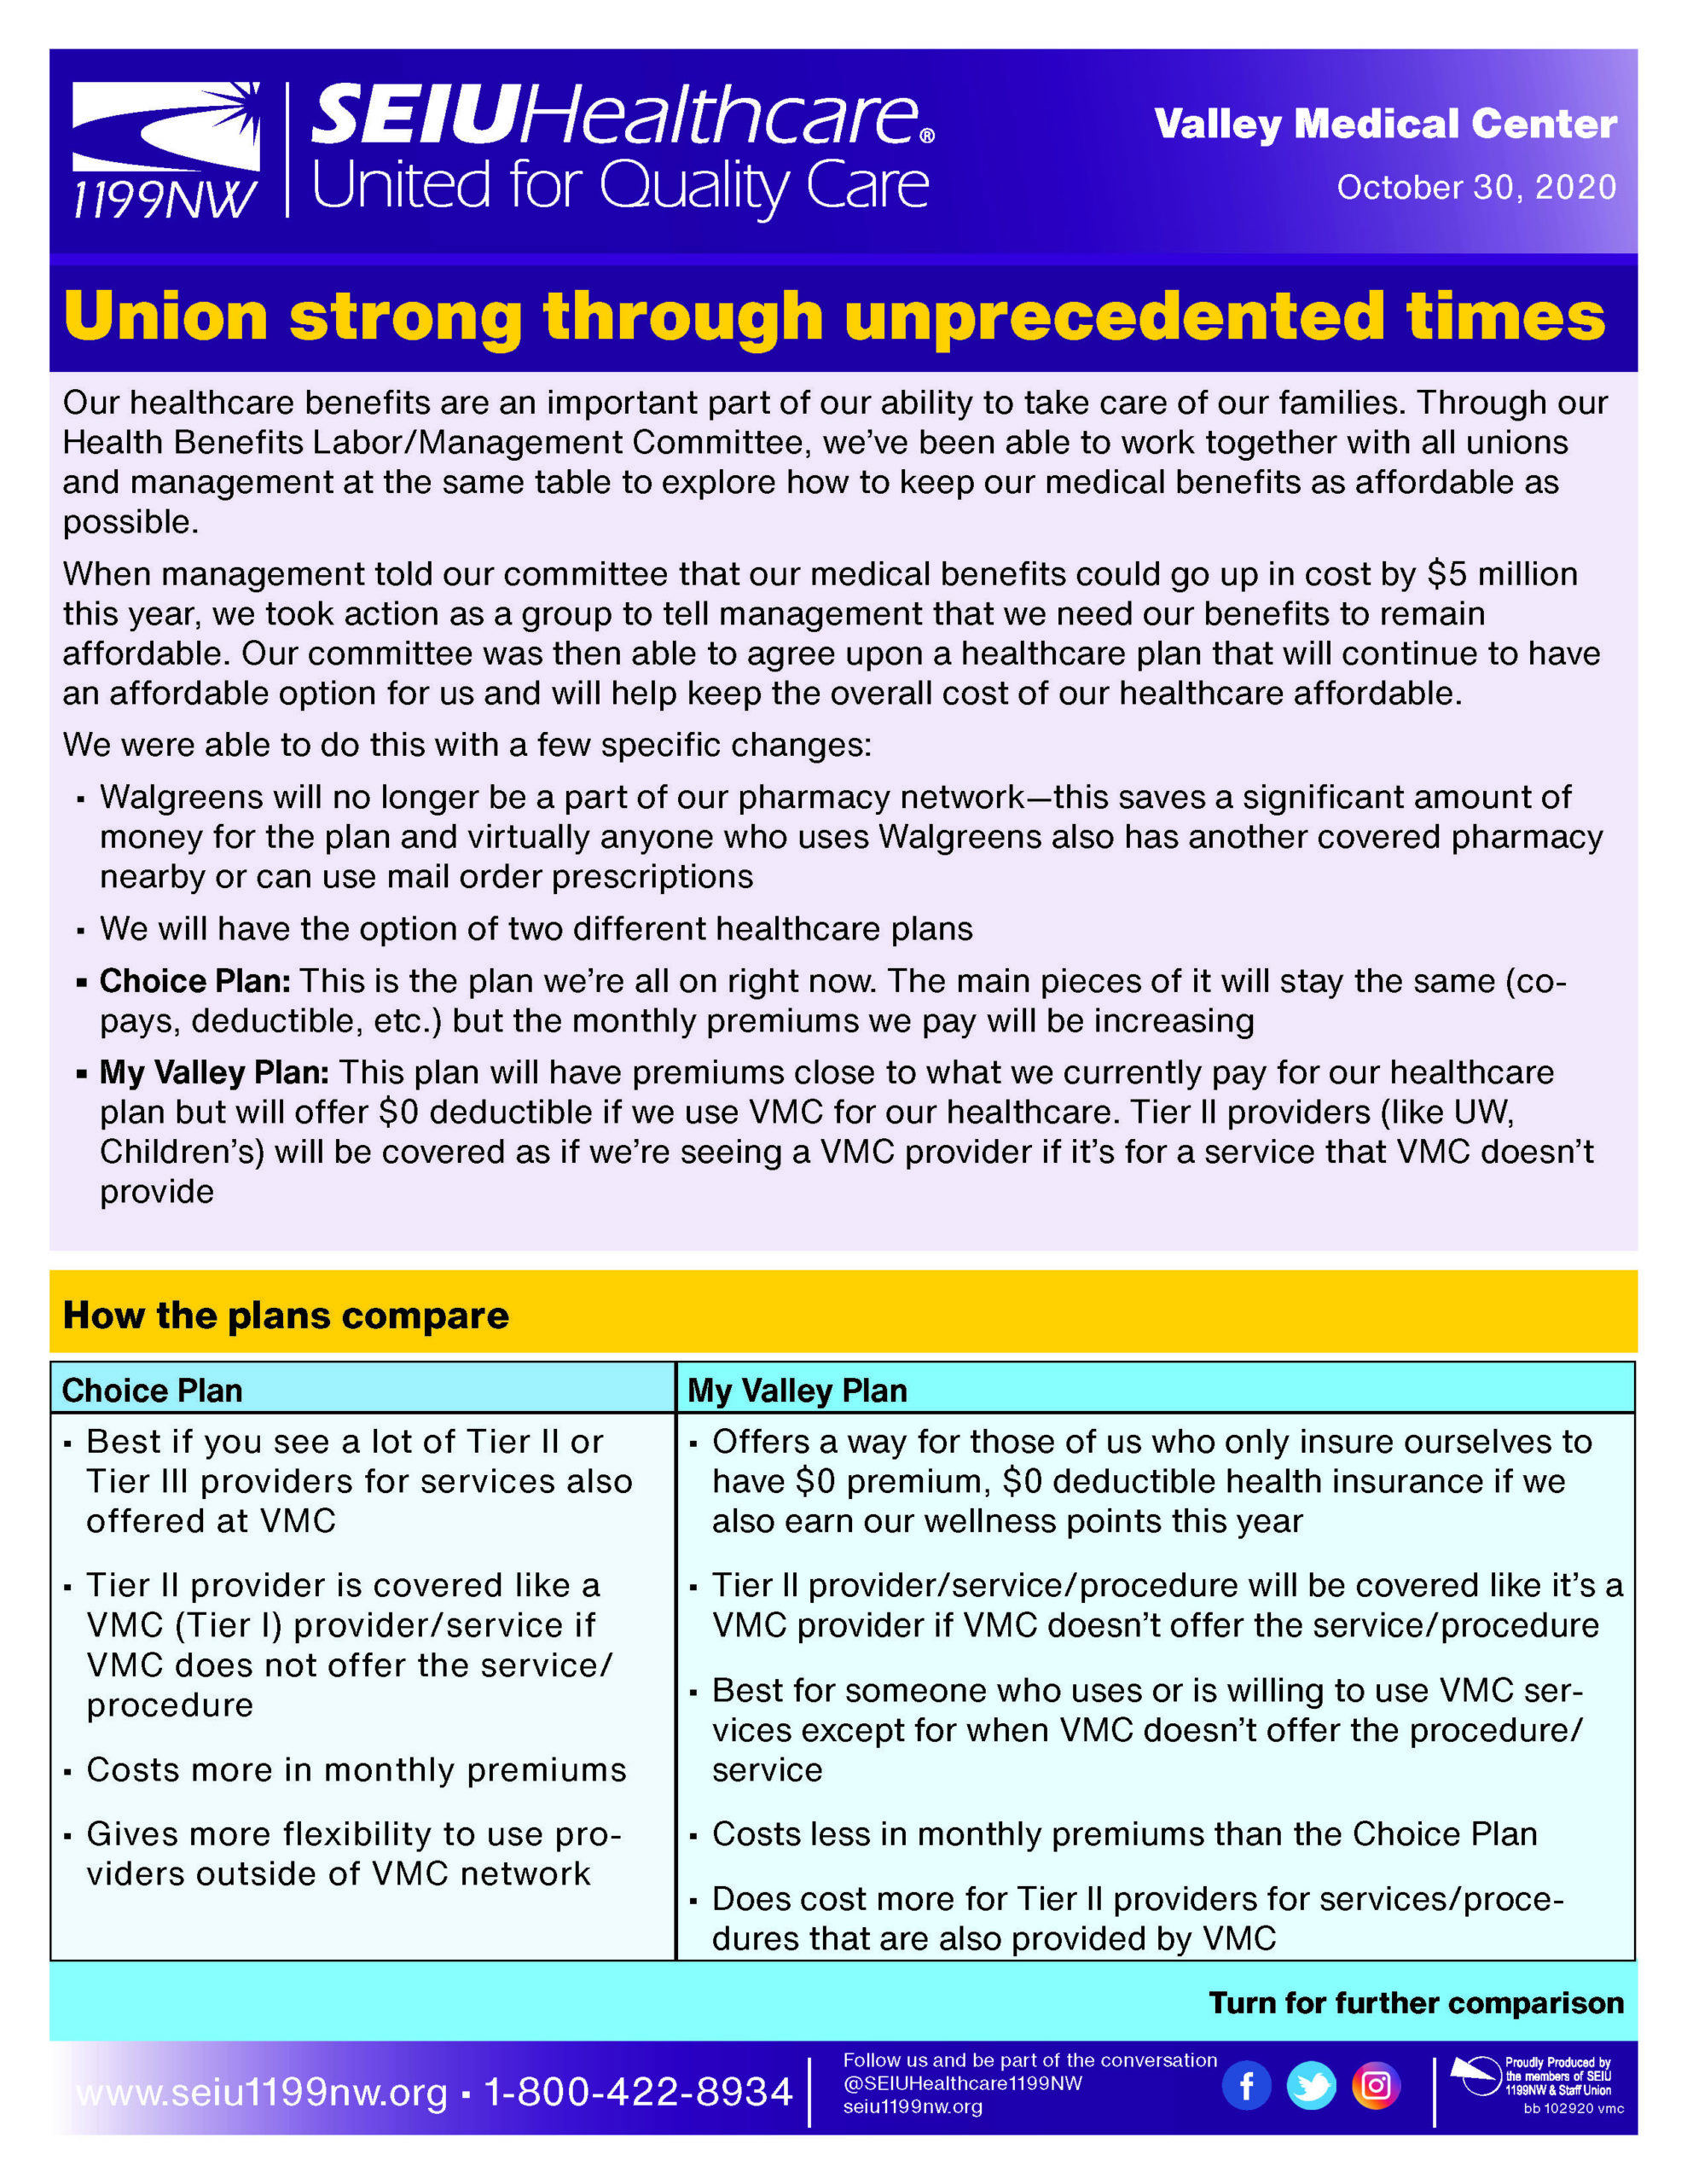 Union strong through unprecedented times